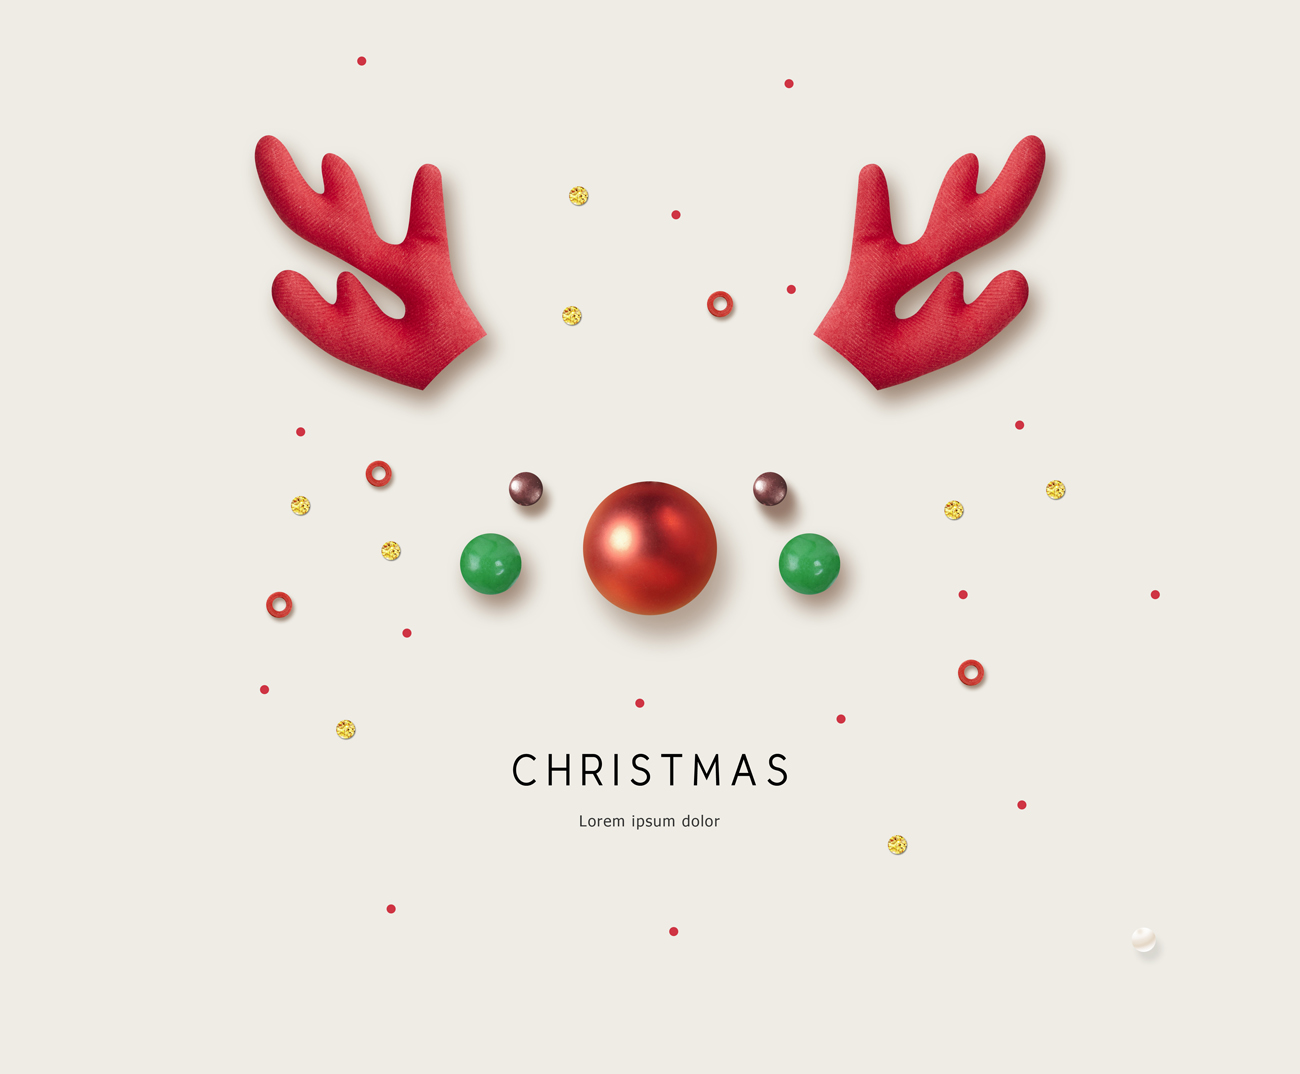 一组非常另类个性的圣诞节海报PSD模版素材 Winter i